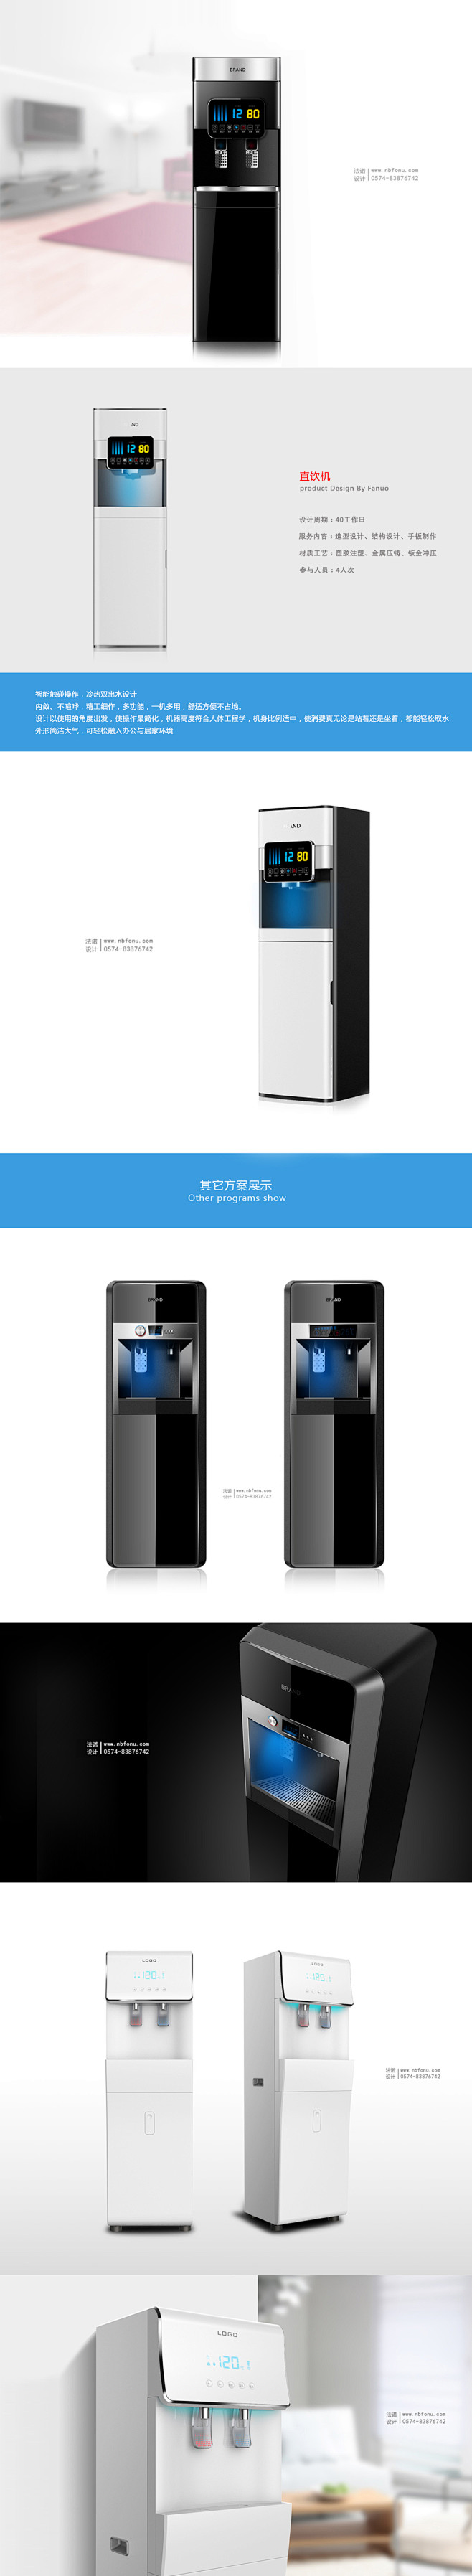 直饮机
饮水机设计
饮水机外观设计
饮水...